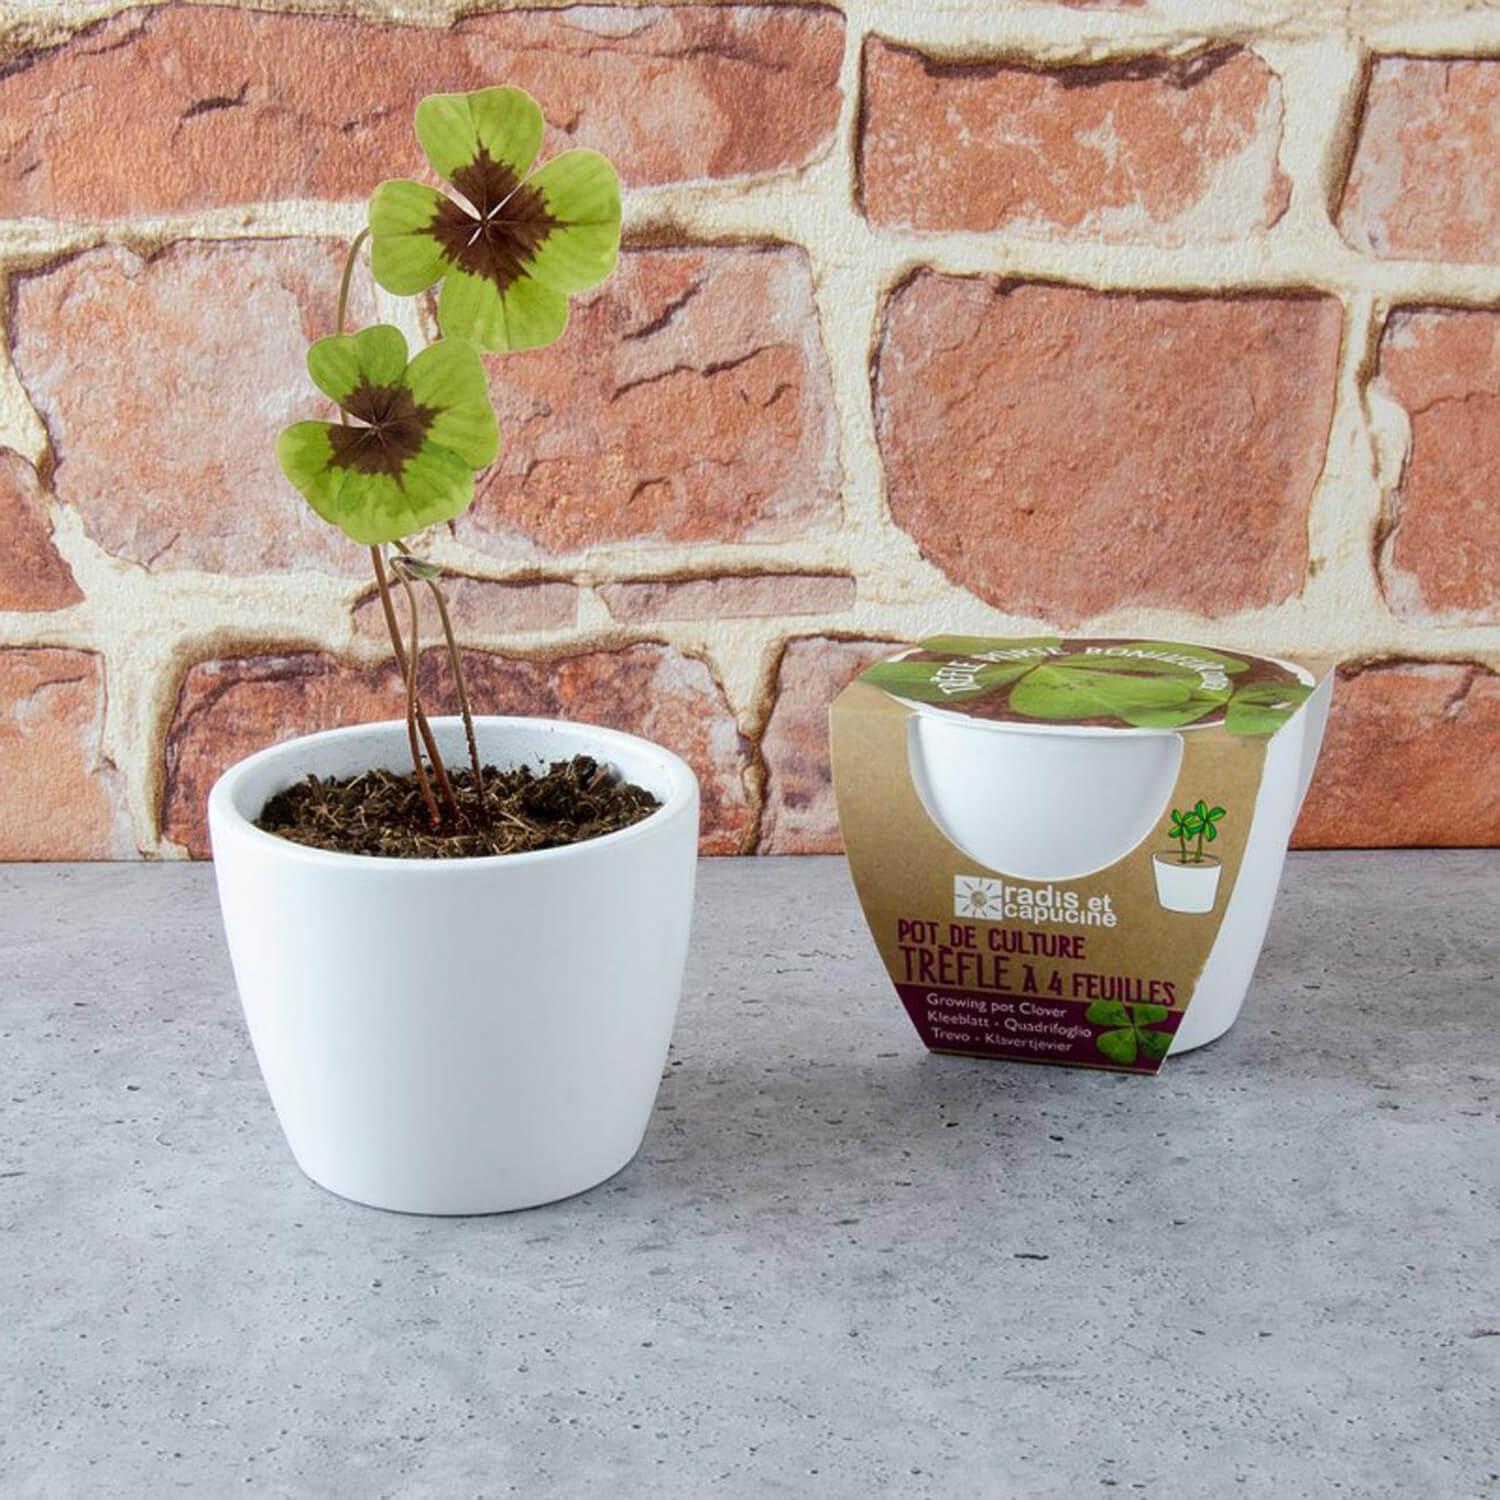 Kit de jardinage : Pot céramique Trèfle à 4 feuilles